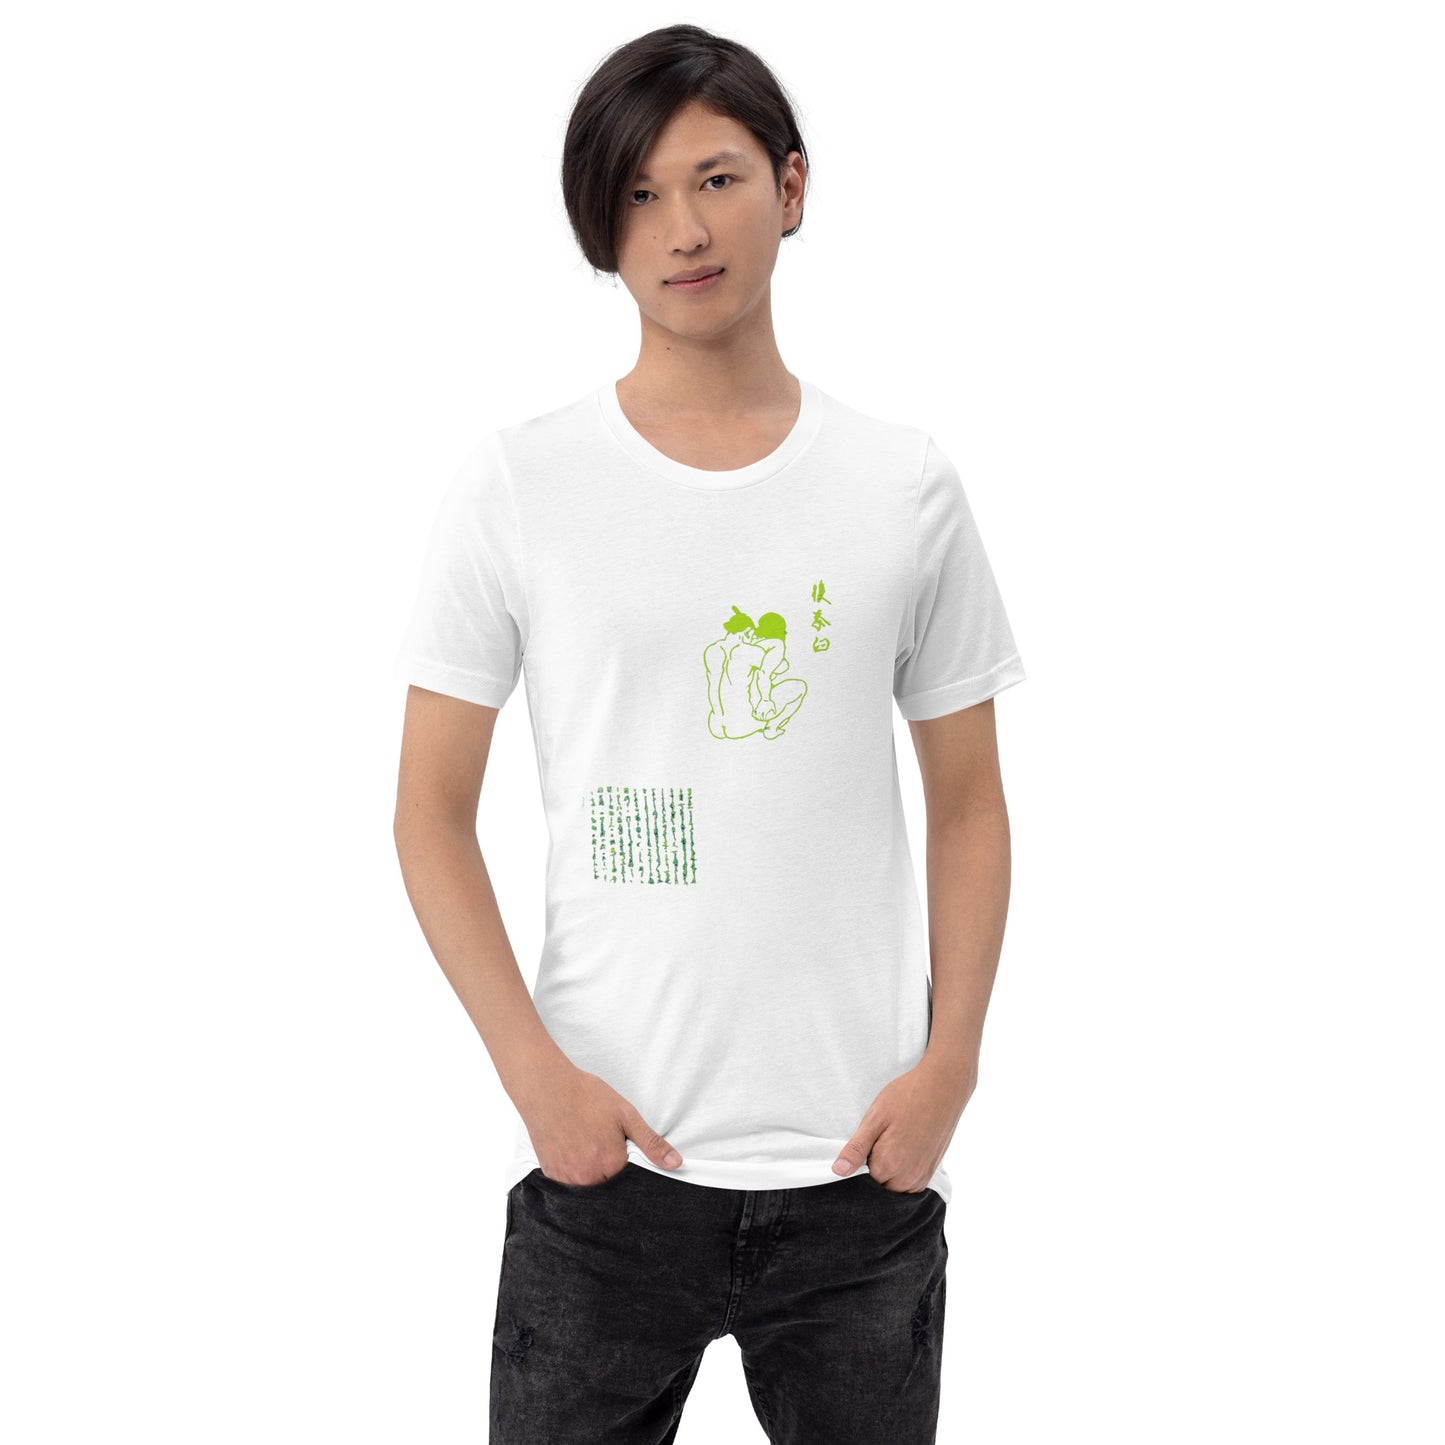 Unisex t-shirt "27 USHIRO CHAUSU" White